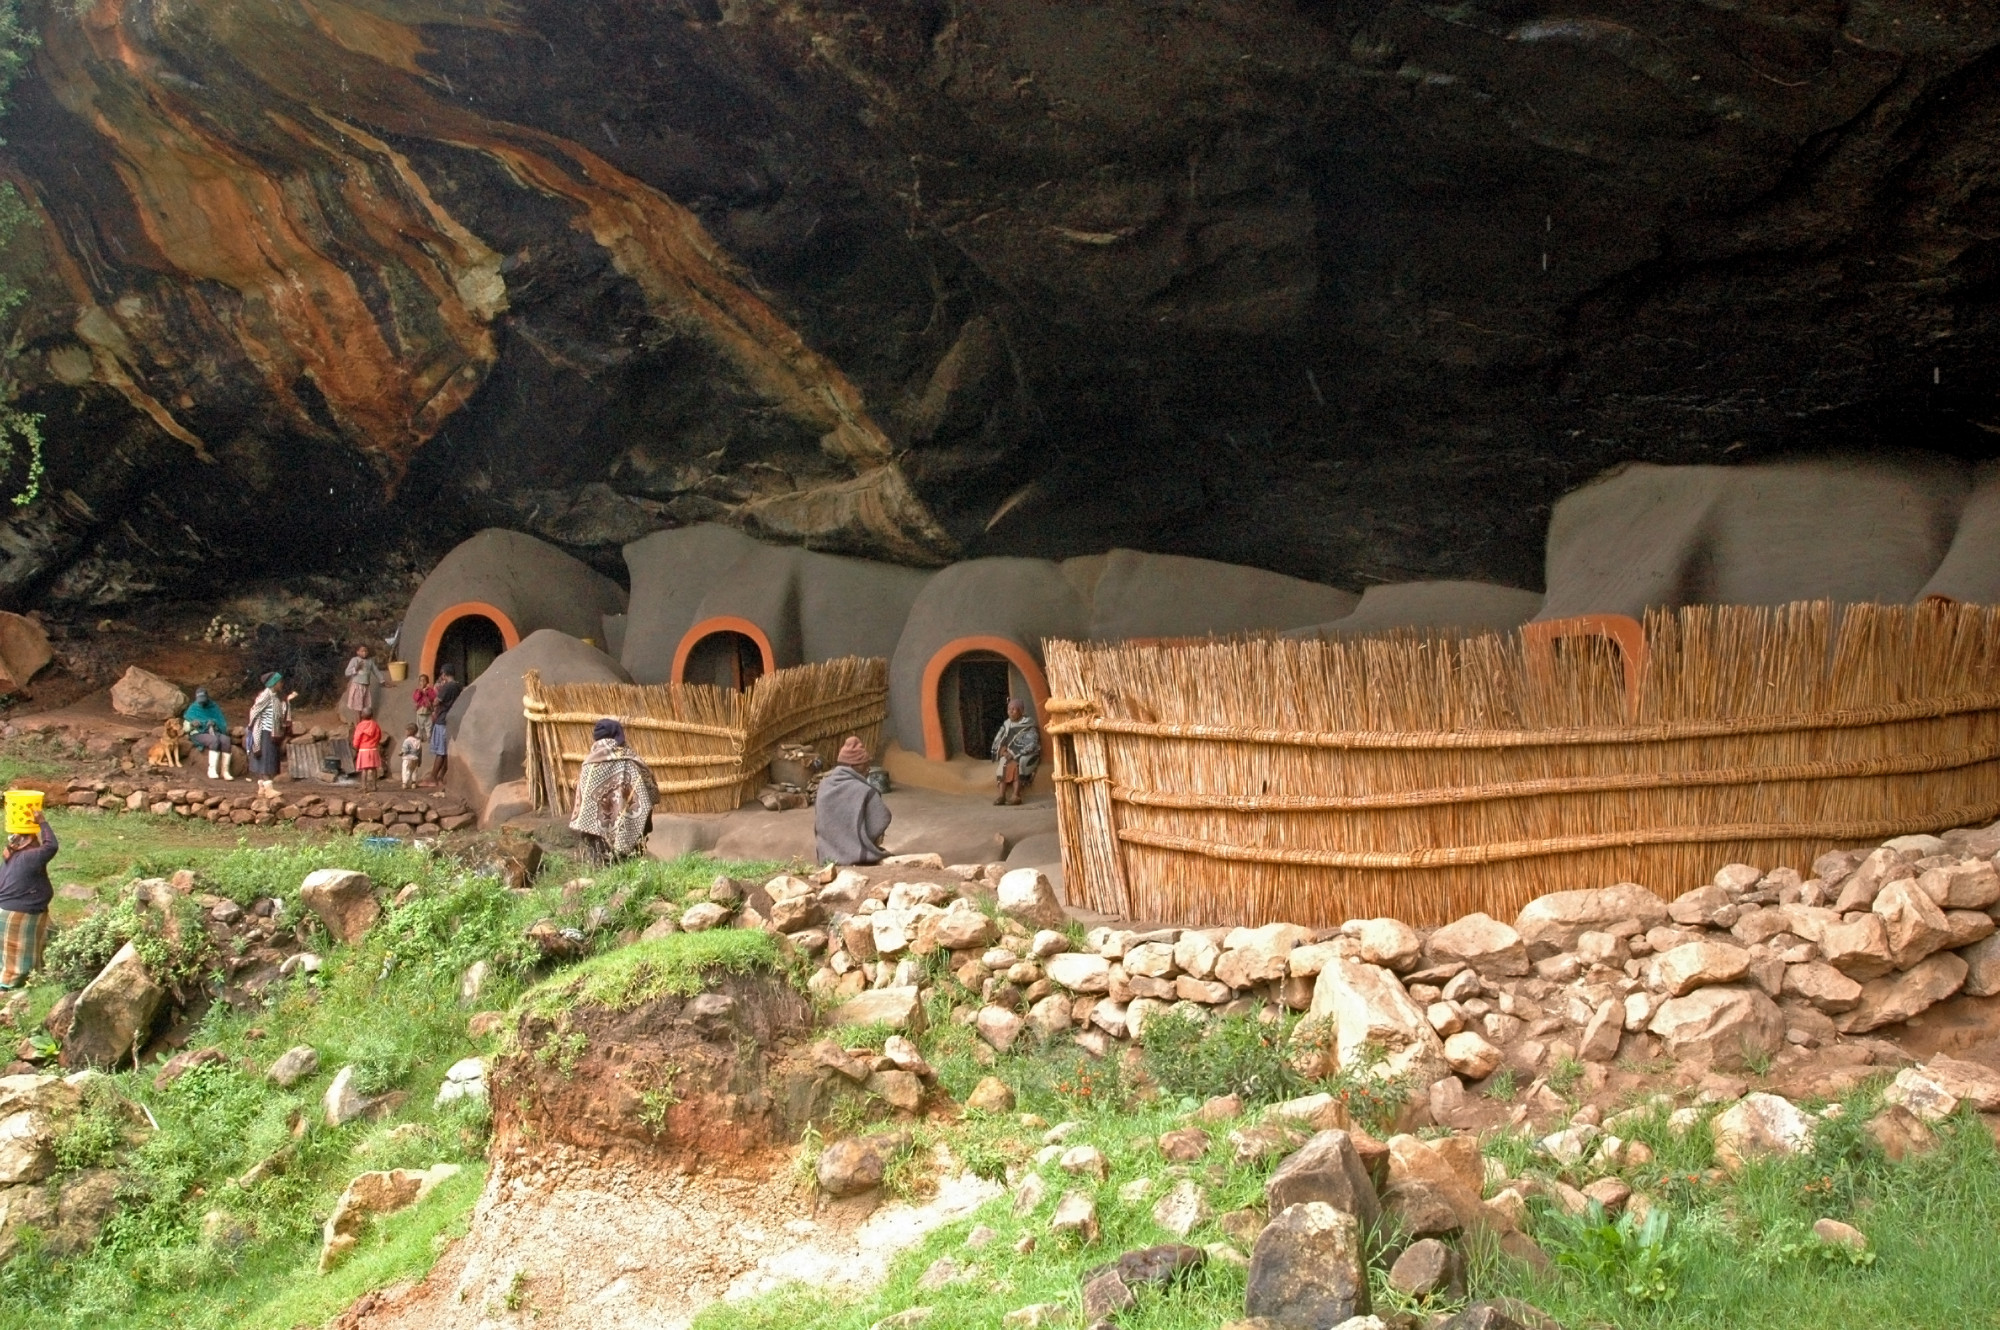 Kome Cave Dwellings (Lesotho): Nhà ở hang động Kome (Lesotho) Được xây dựng bên dưới một vách đá lớn ở Lesotho, những ngôi nhà trong hang động Kome được xây dựng vào cuối thế kỷ 19. Nằm cách Maseru, thủ đô của đất nước, khoảng một giờ đi xe, cư dân hiện tại là hậu duệ của bộ lạc Basia, mặc dù lịch sử đầy đủ của những ngôi nhà độc đáo vẫn chưa được  biết . Những ngôi nhà được xây dựng từ bùn, và theo  Atlas Obscura , một số gia đình sẽ chào đón du khách vào bên trong.